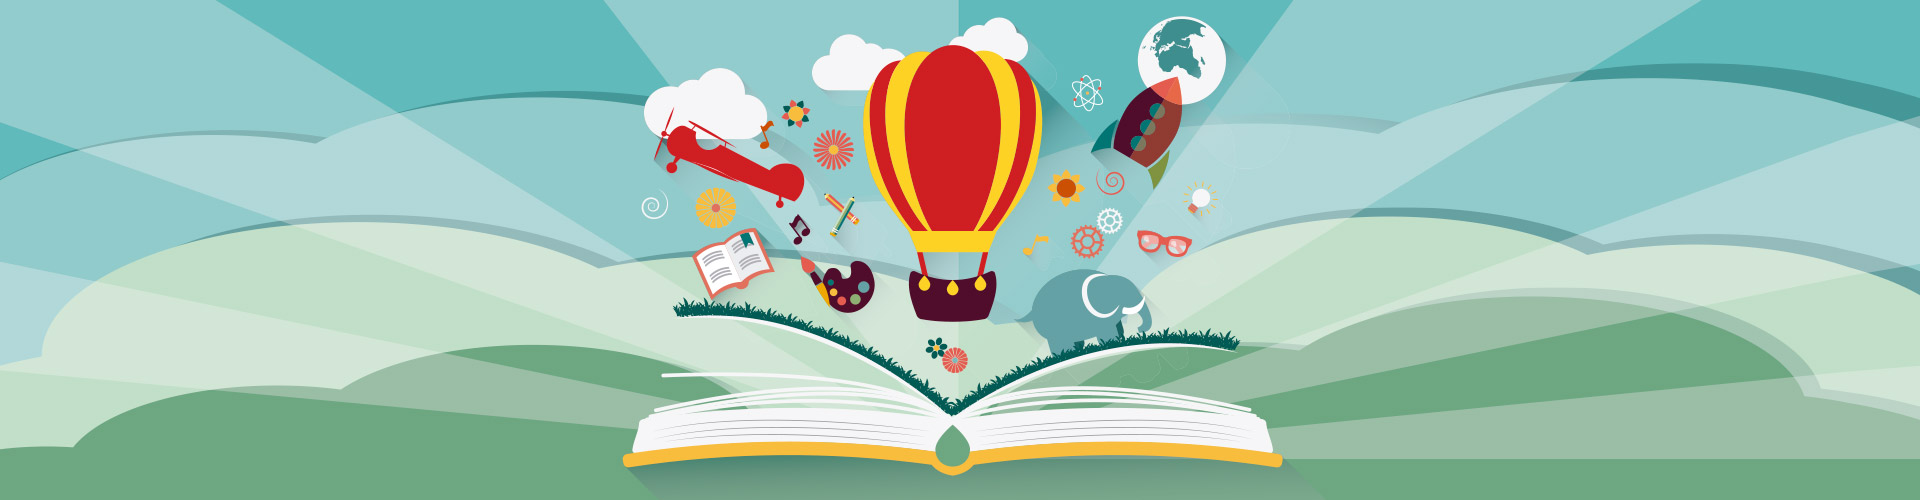 La lectura  estimula tu imaginación y creatividad literatura juvenil